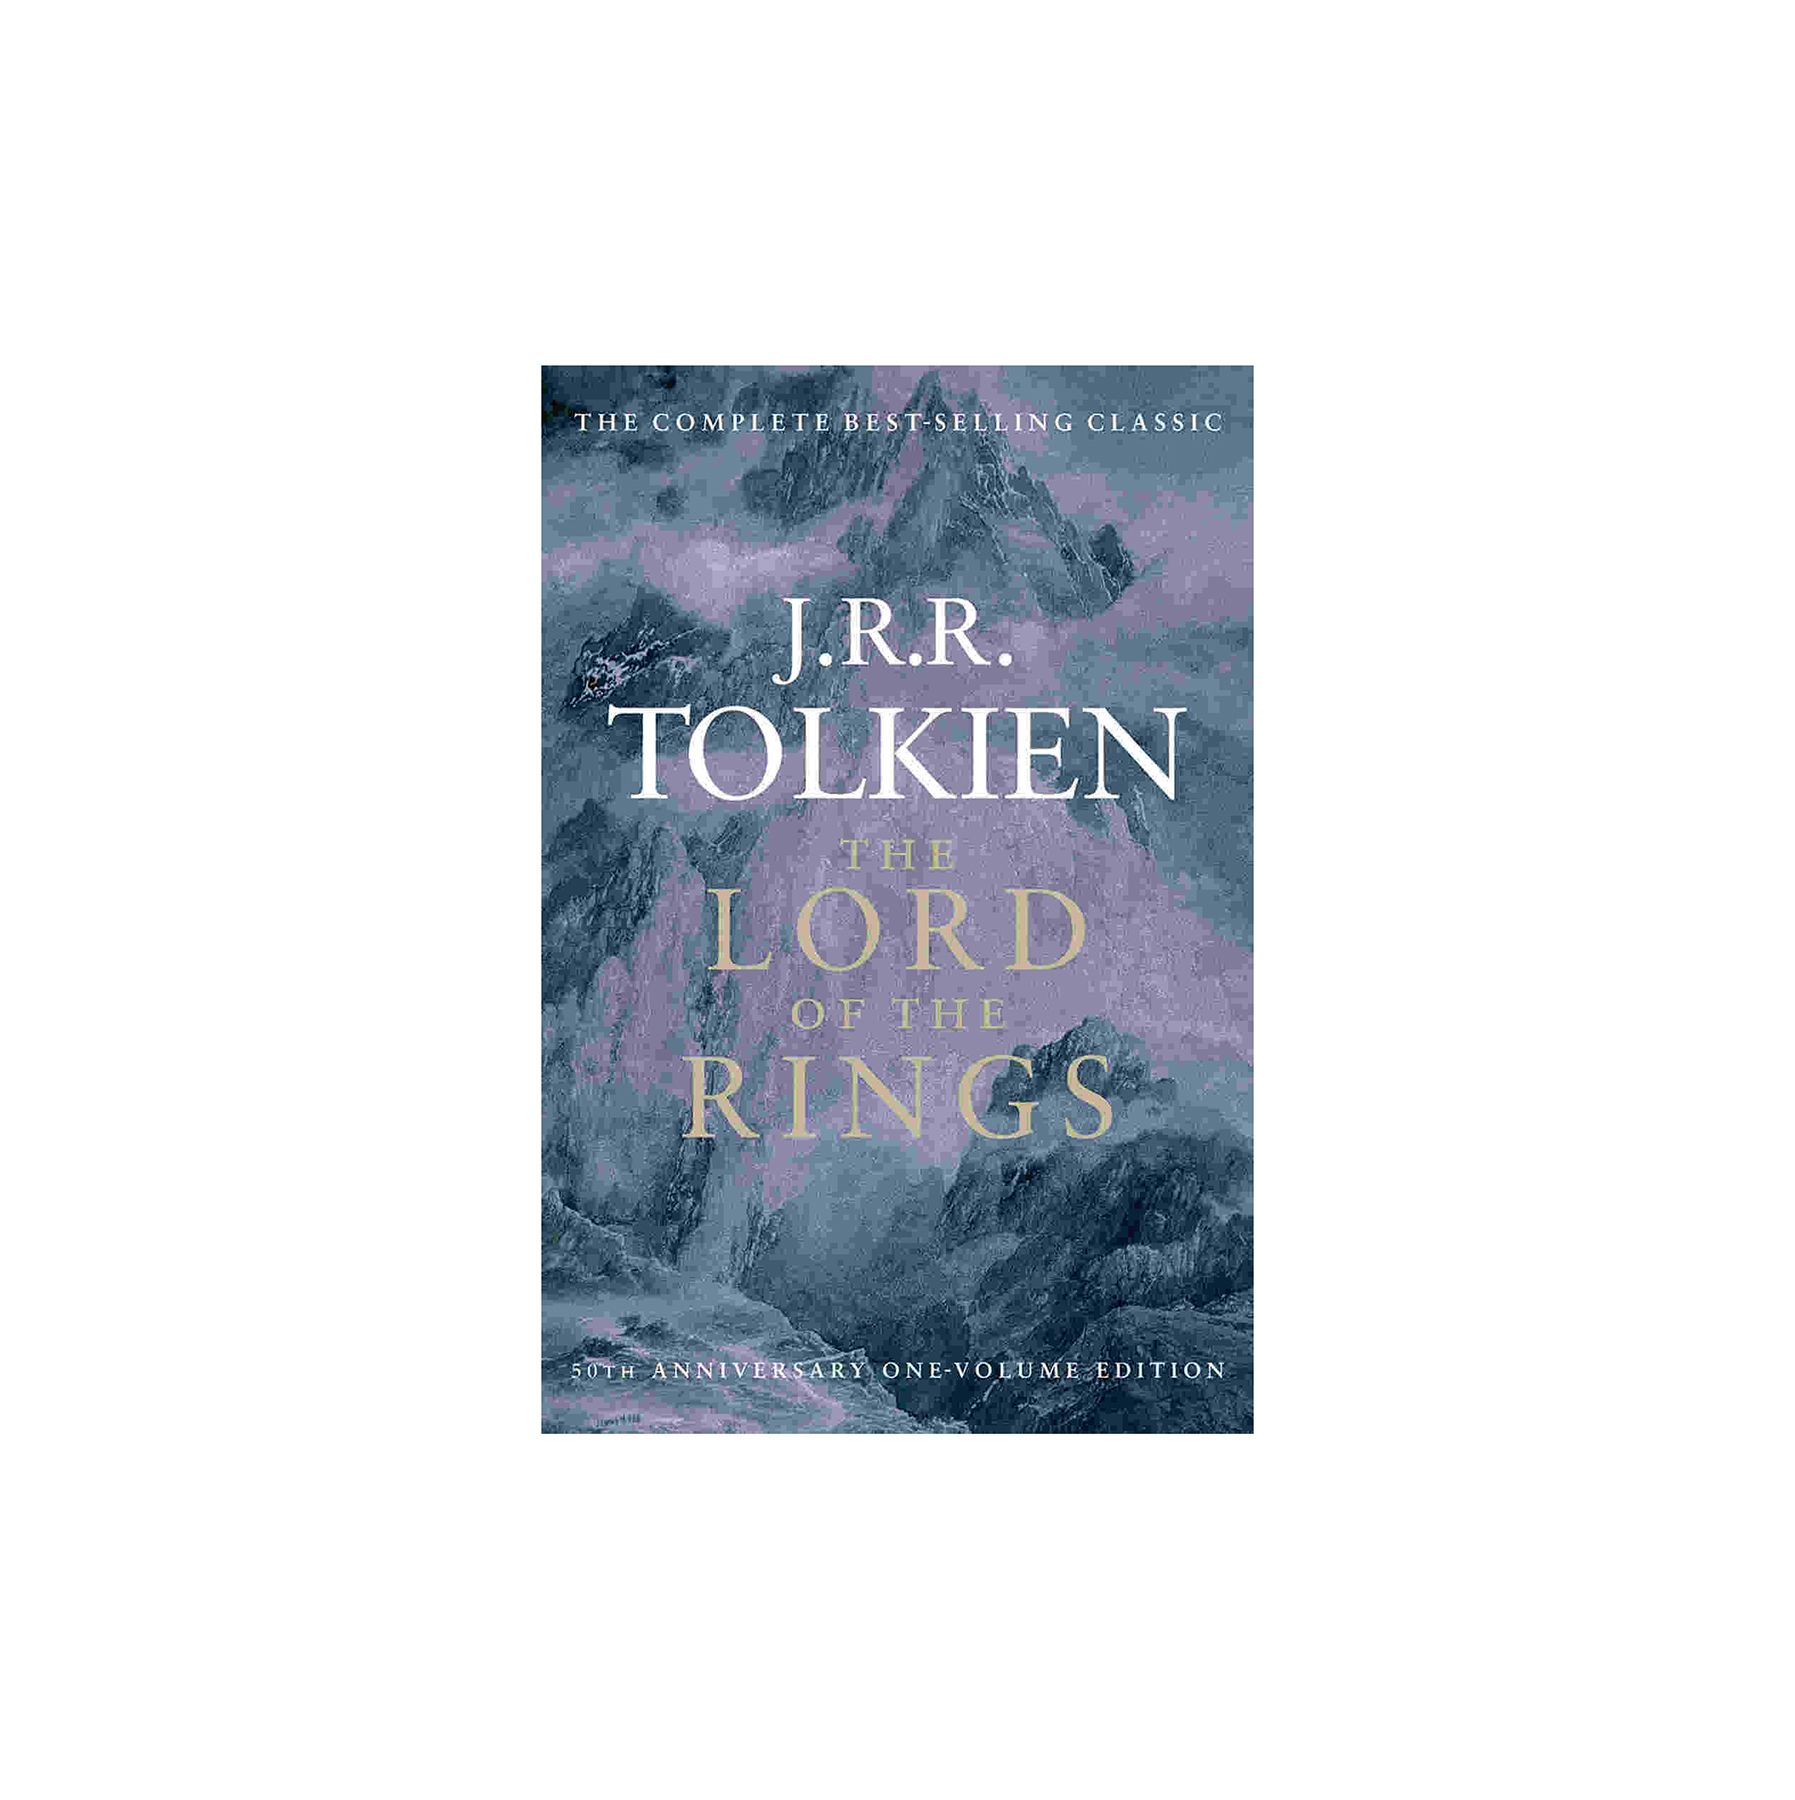 Gospodar prstanov, avtor J.R.R. Tolkien